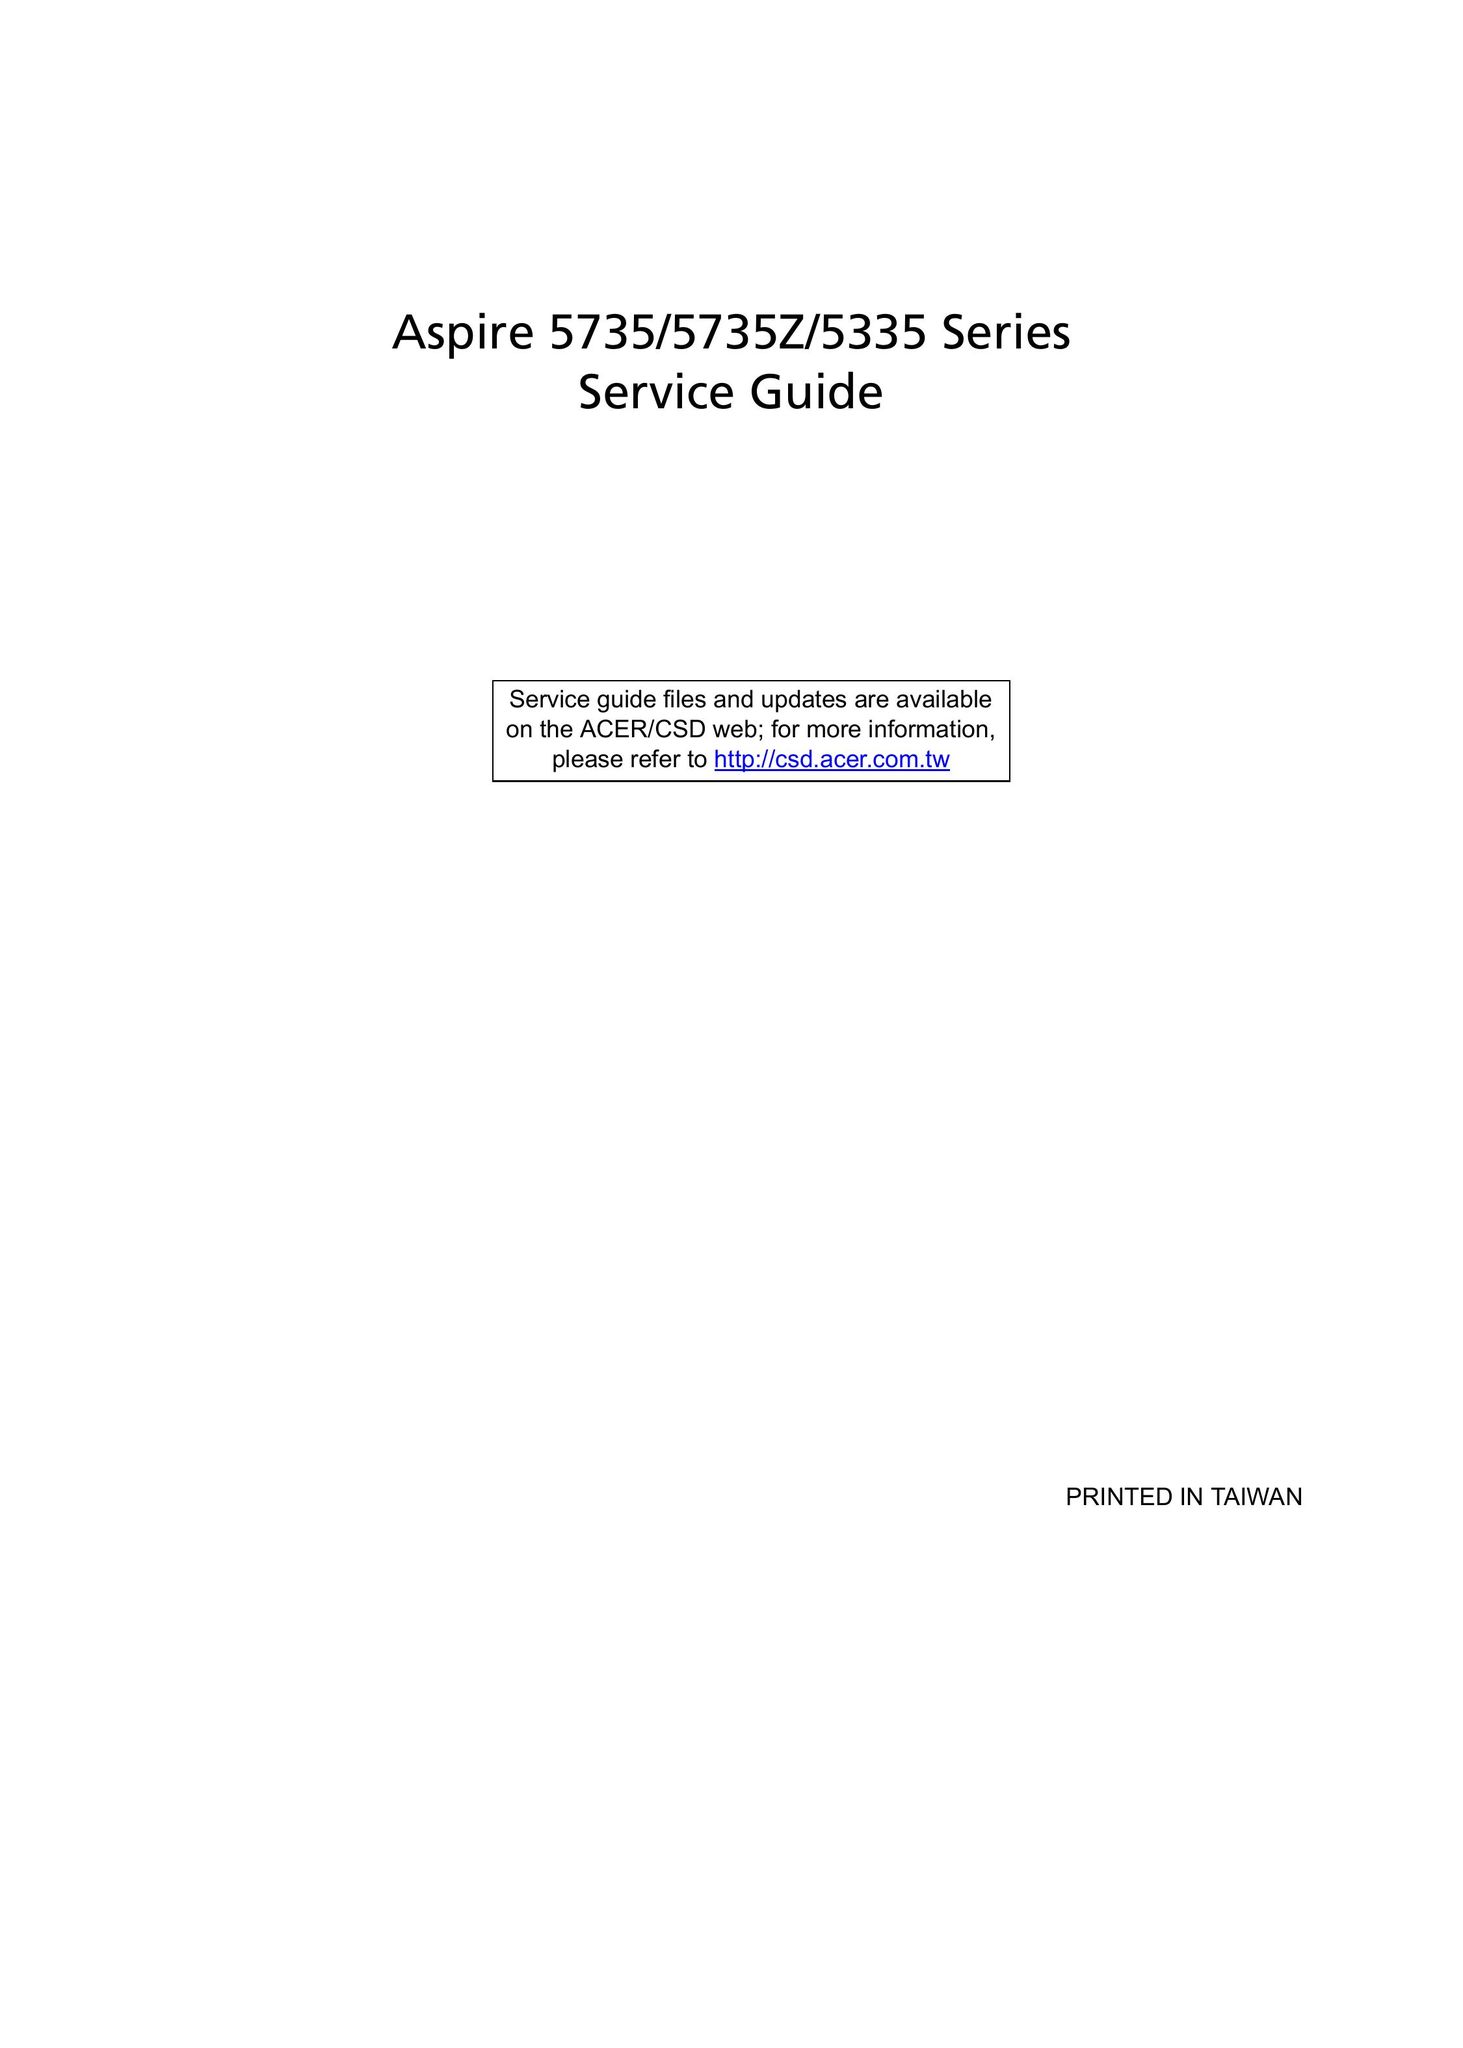 Aspire Digital 5335 Laptop User Manual